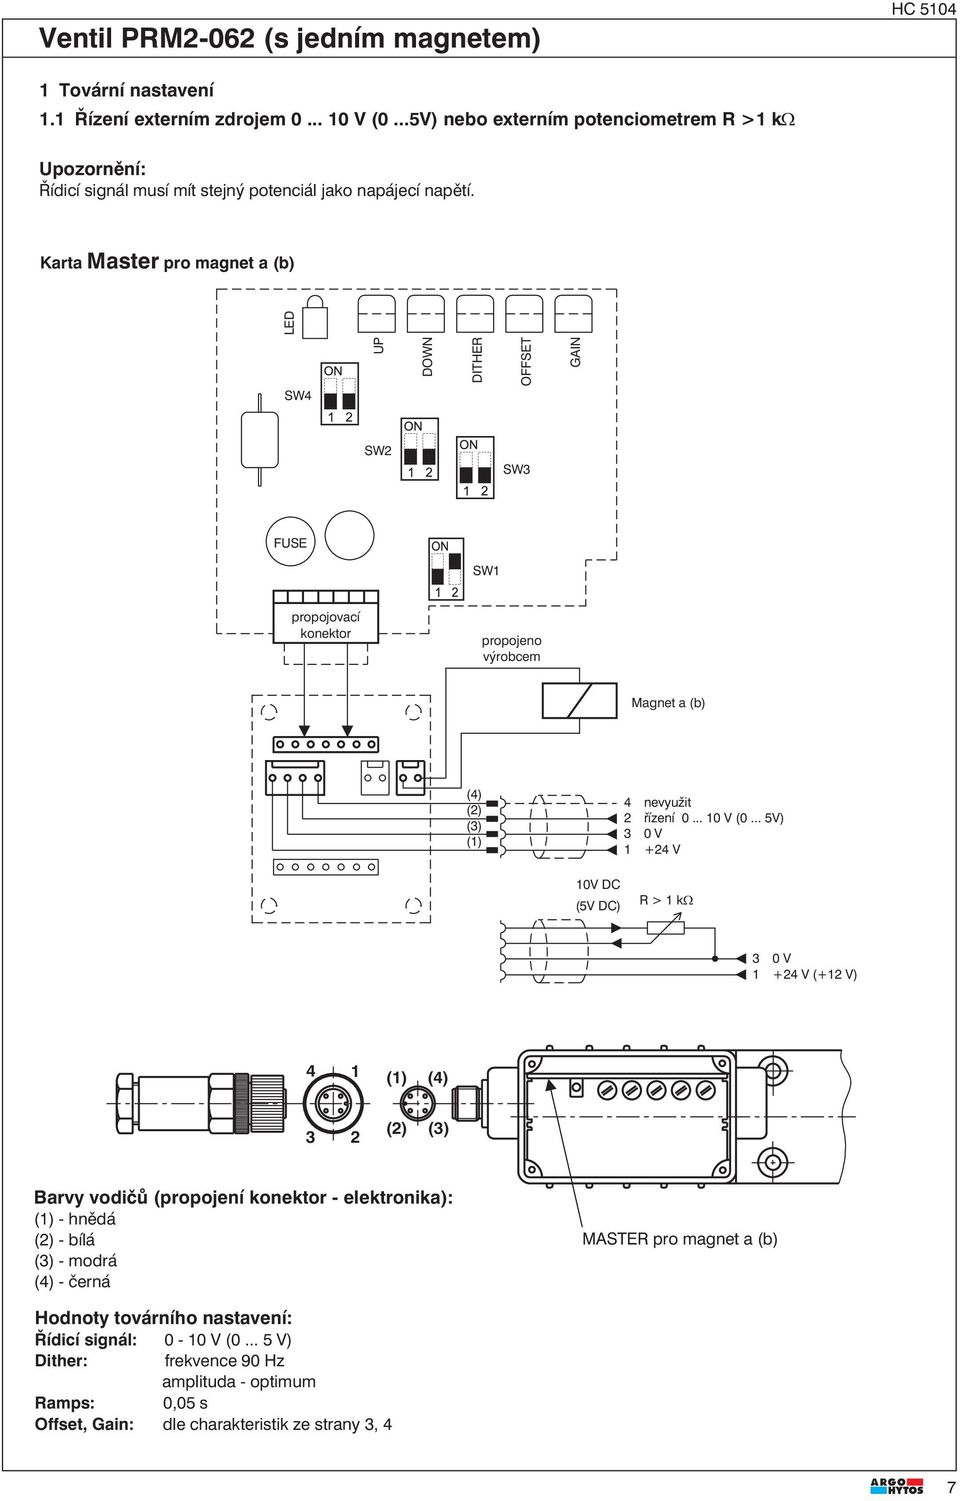 Karta Master pro magnet a (b) LED SW4 UP DOWN SW SW FUSE propojovací konektor propojeno výrobcem Magnet a (b) (4) () () (1) 4 nevyužit řízení 0... 10 V (0.